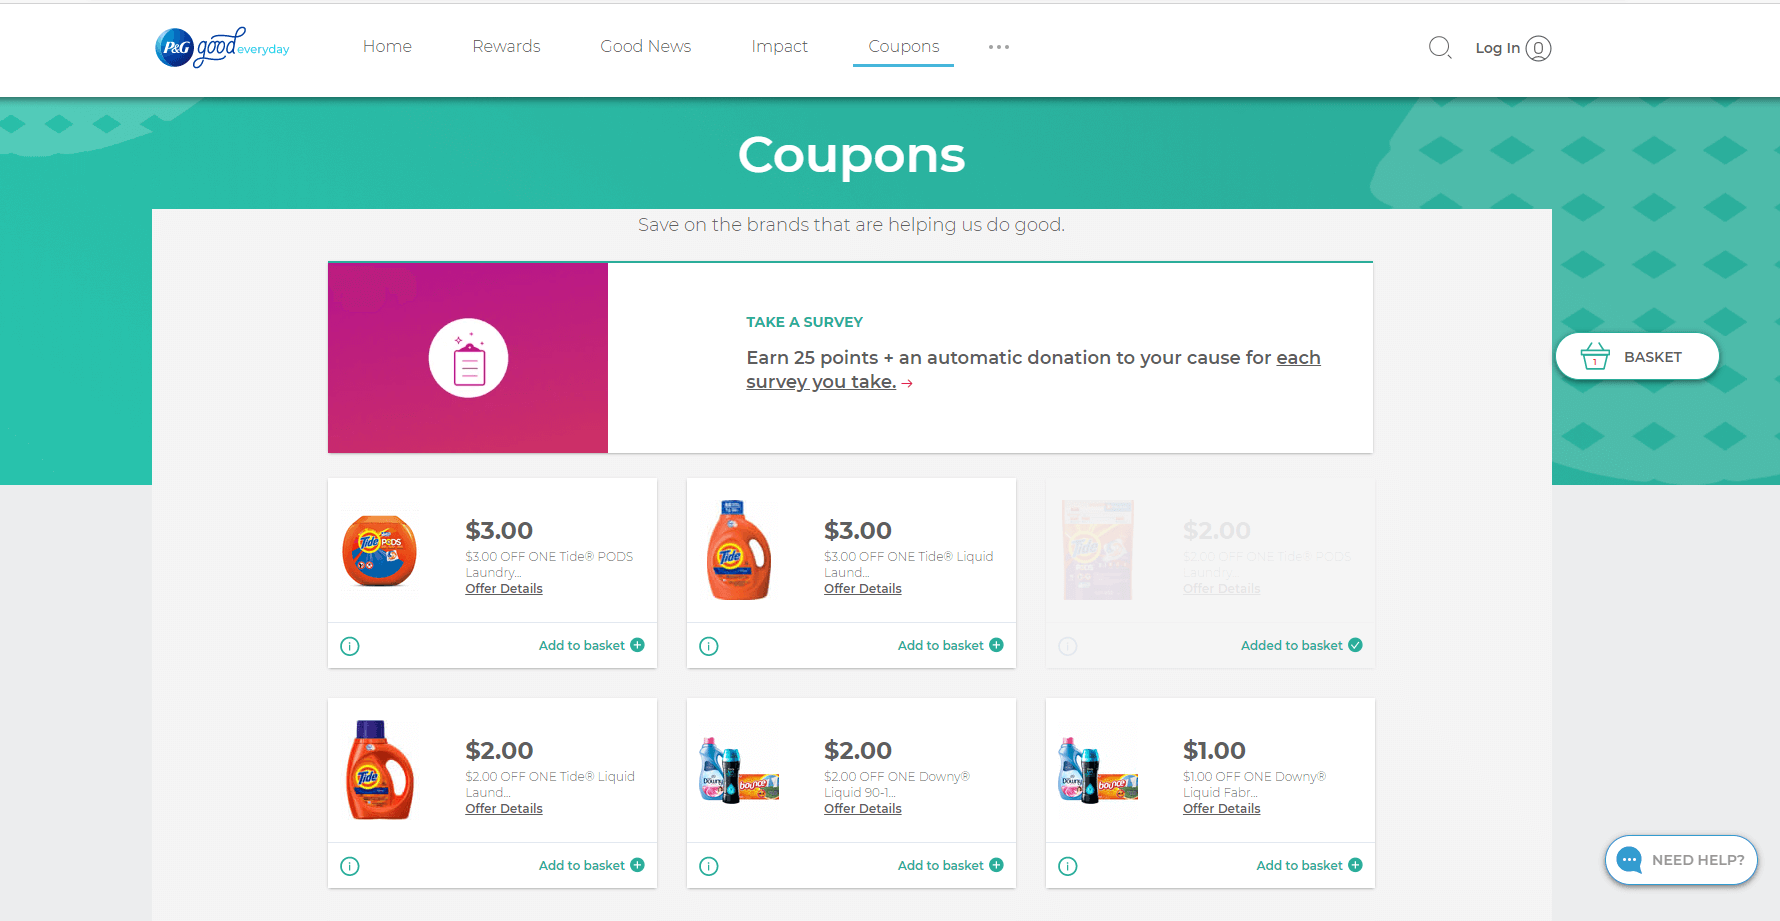 BrandSaver.com coupons